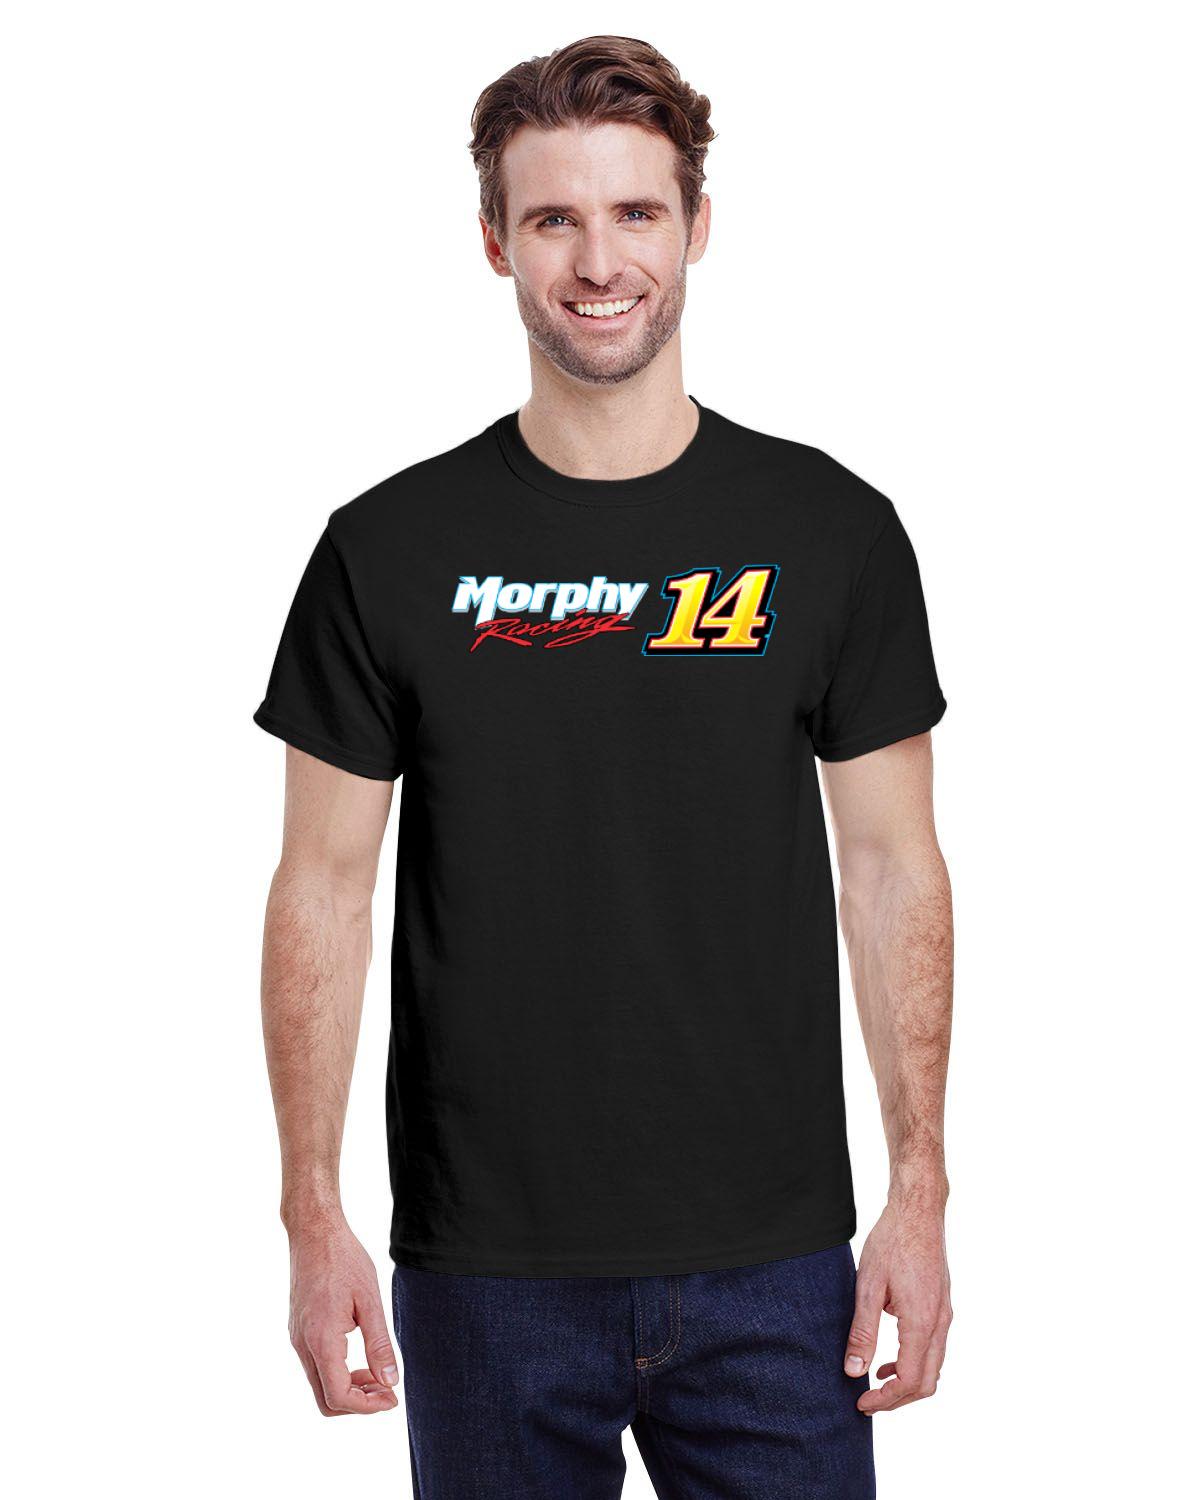 Jerrid Morphy Racing Men's Tshirt